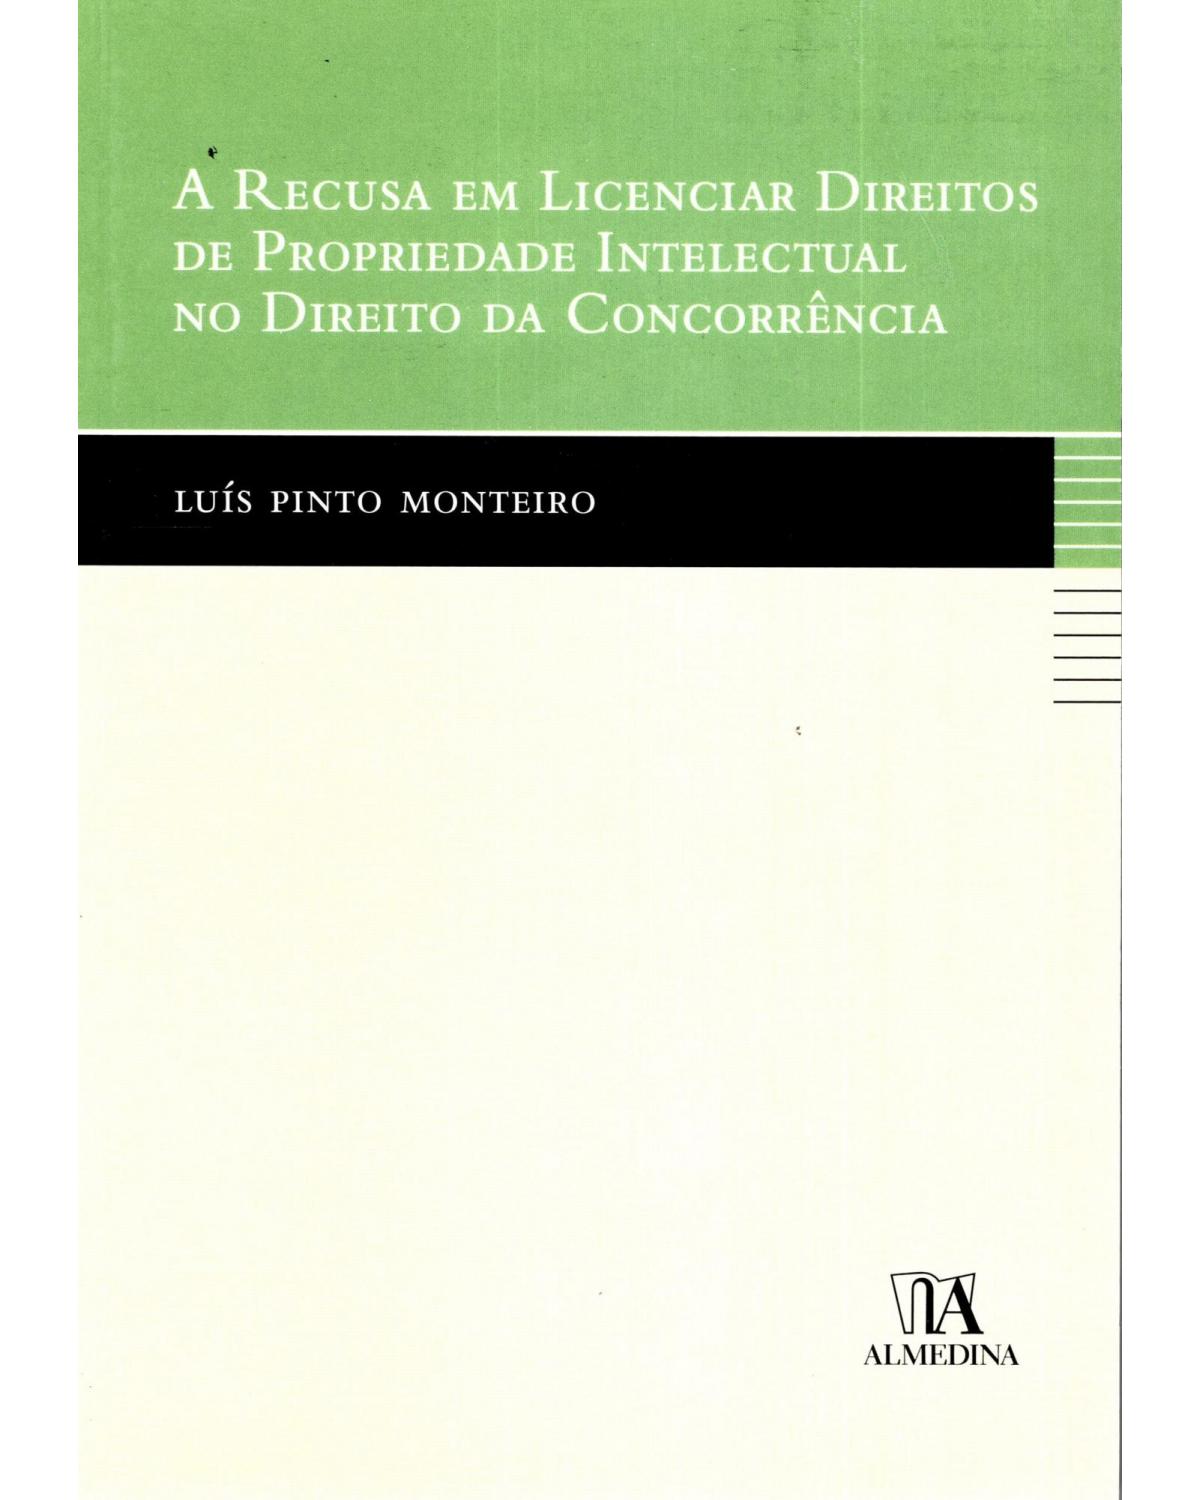 A recusa em licenciar direitos de propriedade intelectual no direito da concorrência - 1ª Edição | 2010